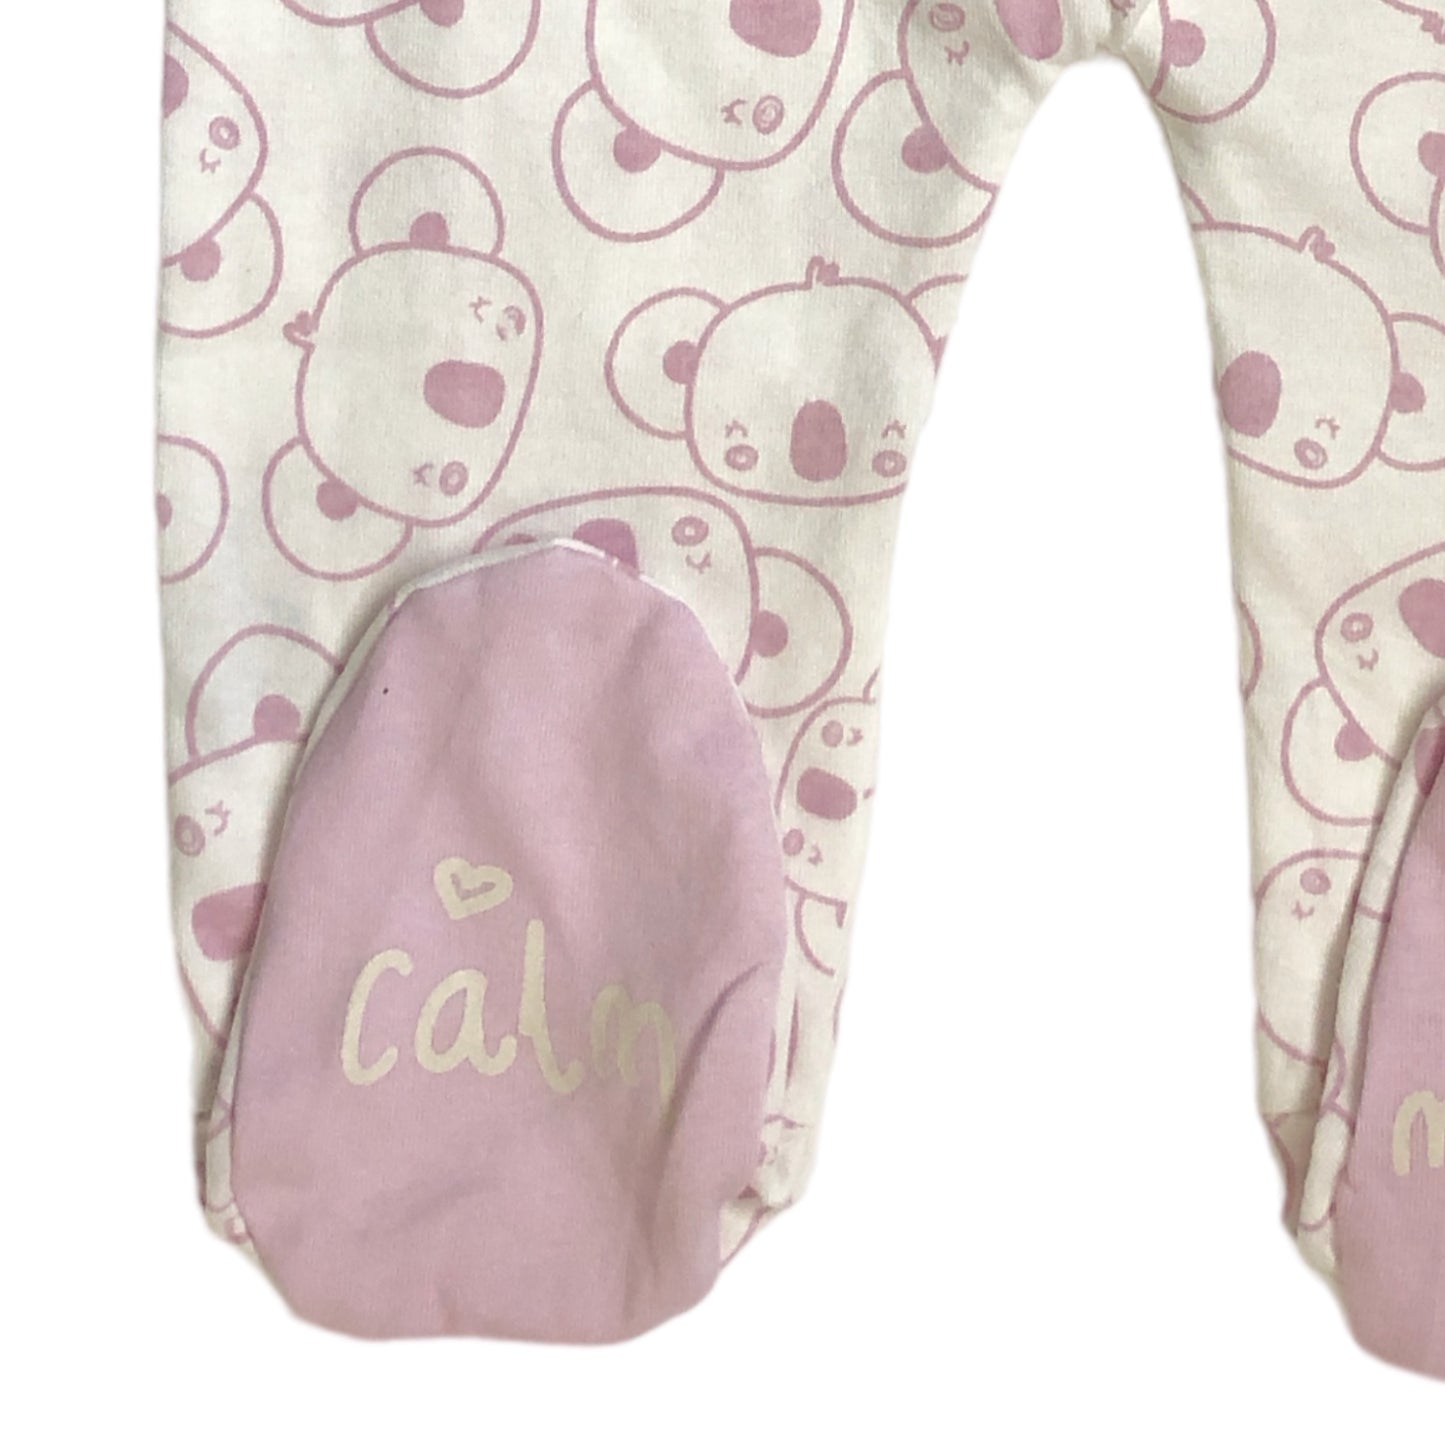 Pijama mameluco osos rosas para bebé niña LOSAN